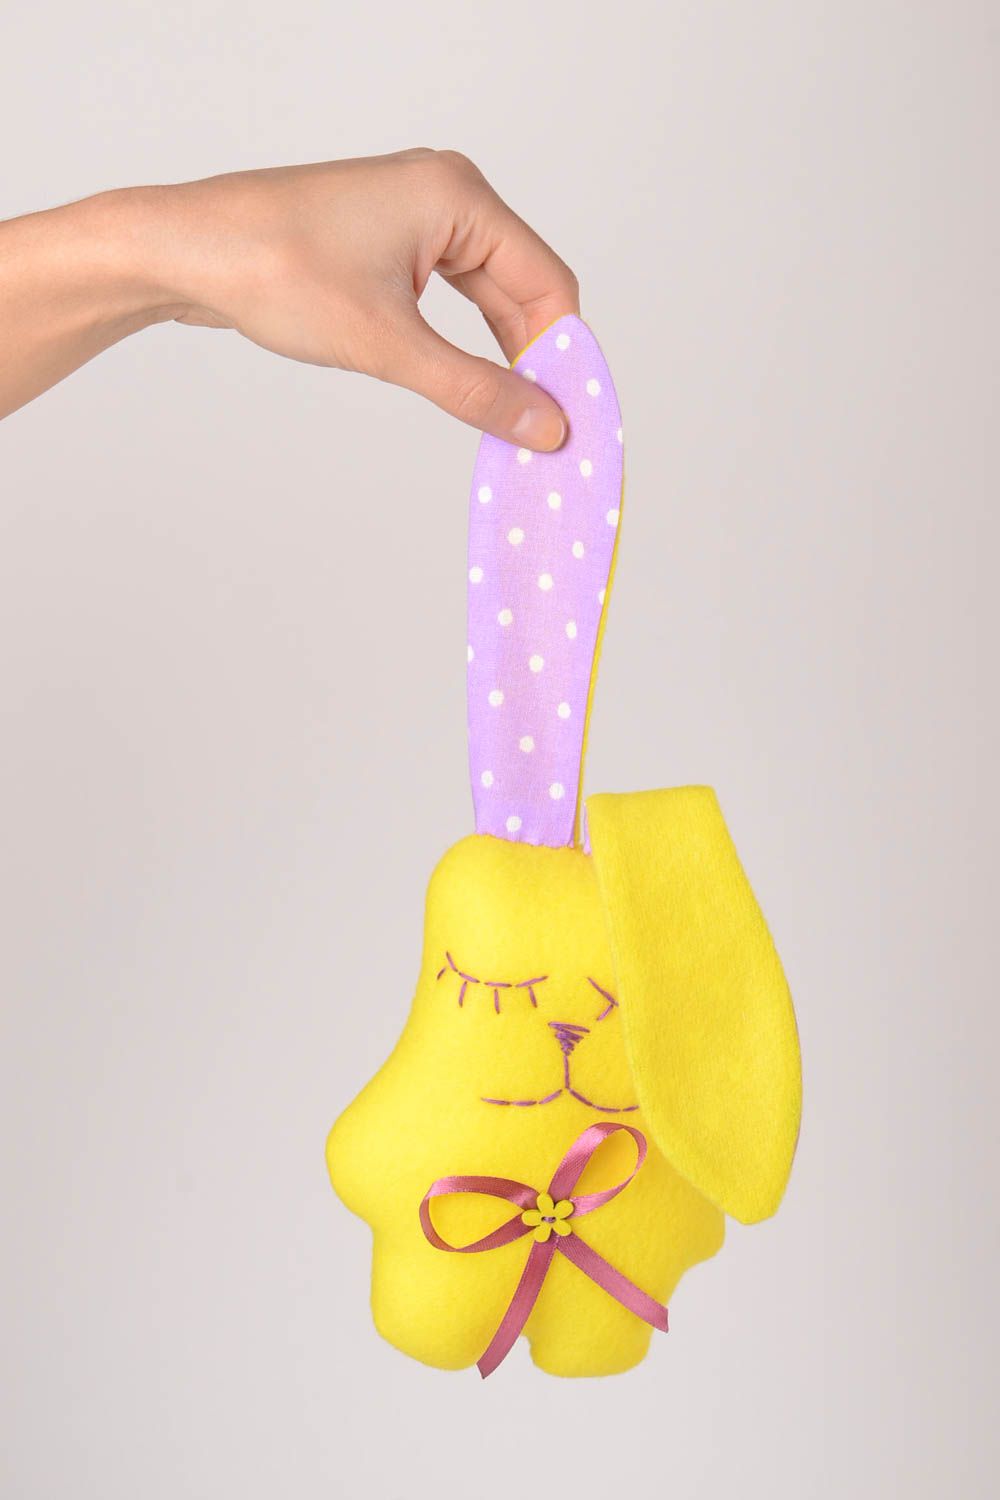 Детская игрушка ручной работы игрушка из флиса мягкая игрушка желтый зайчик фото 2